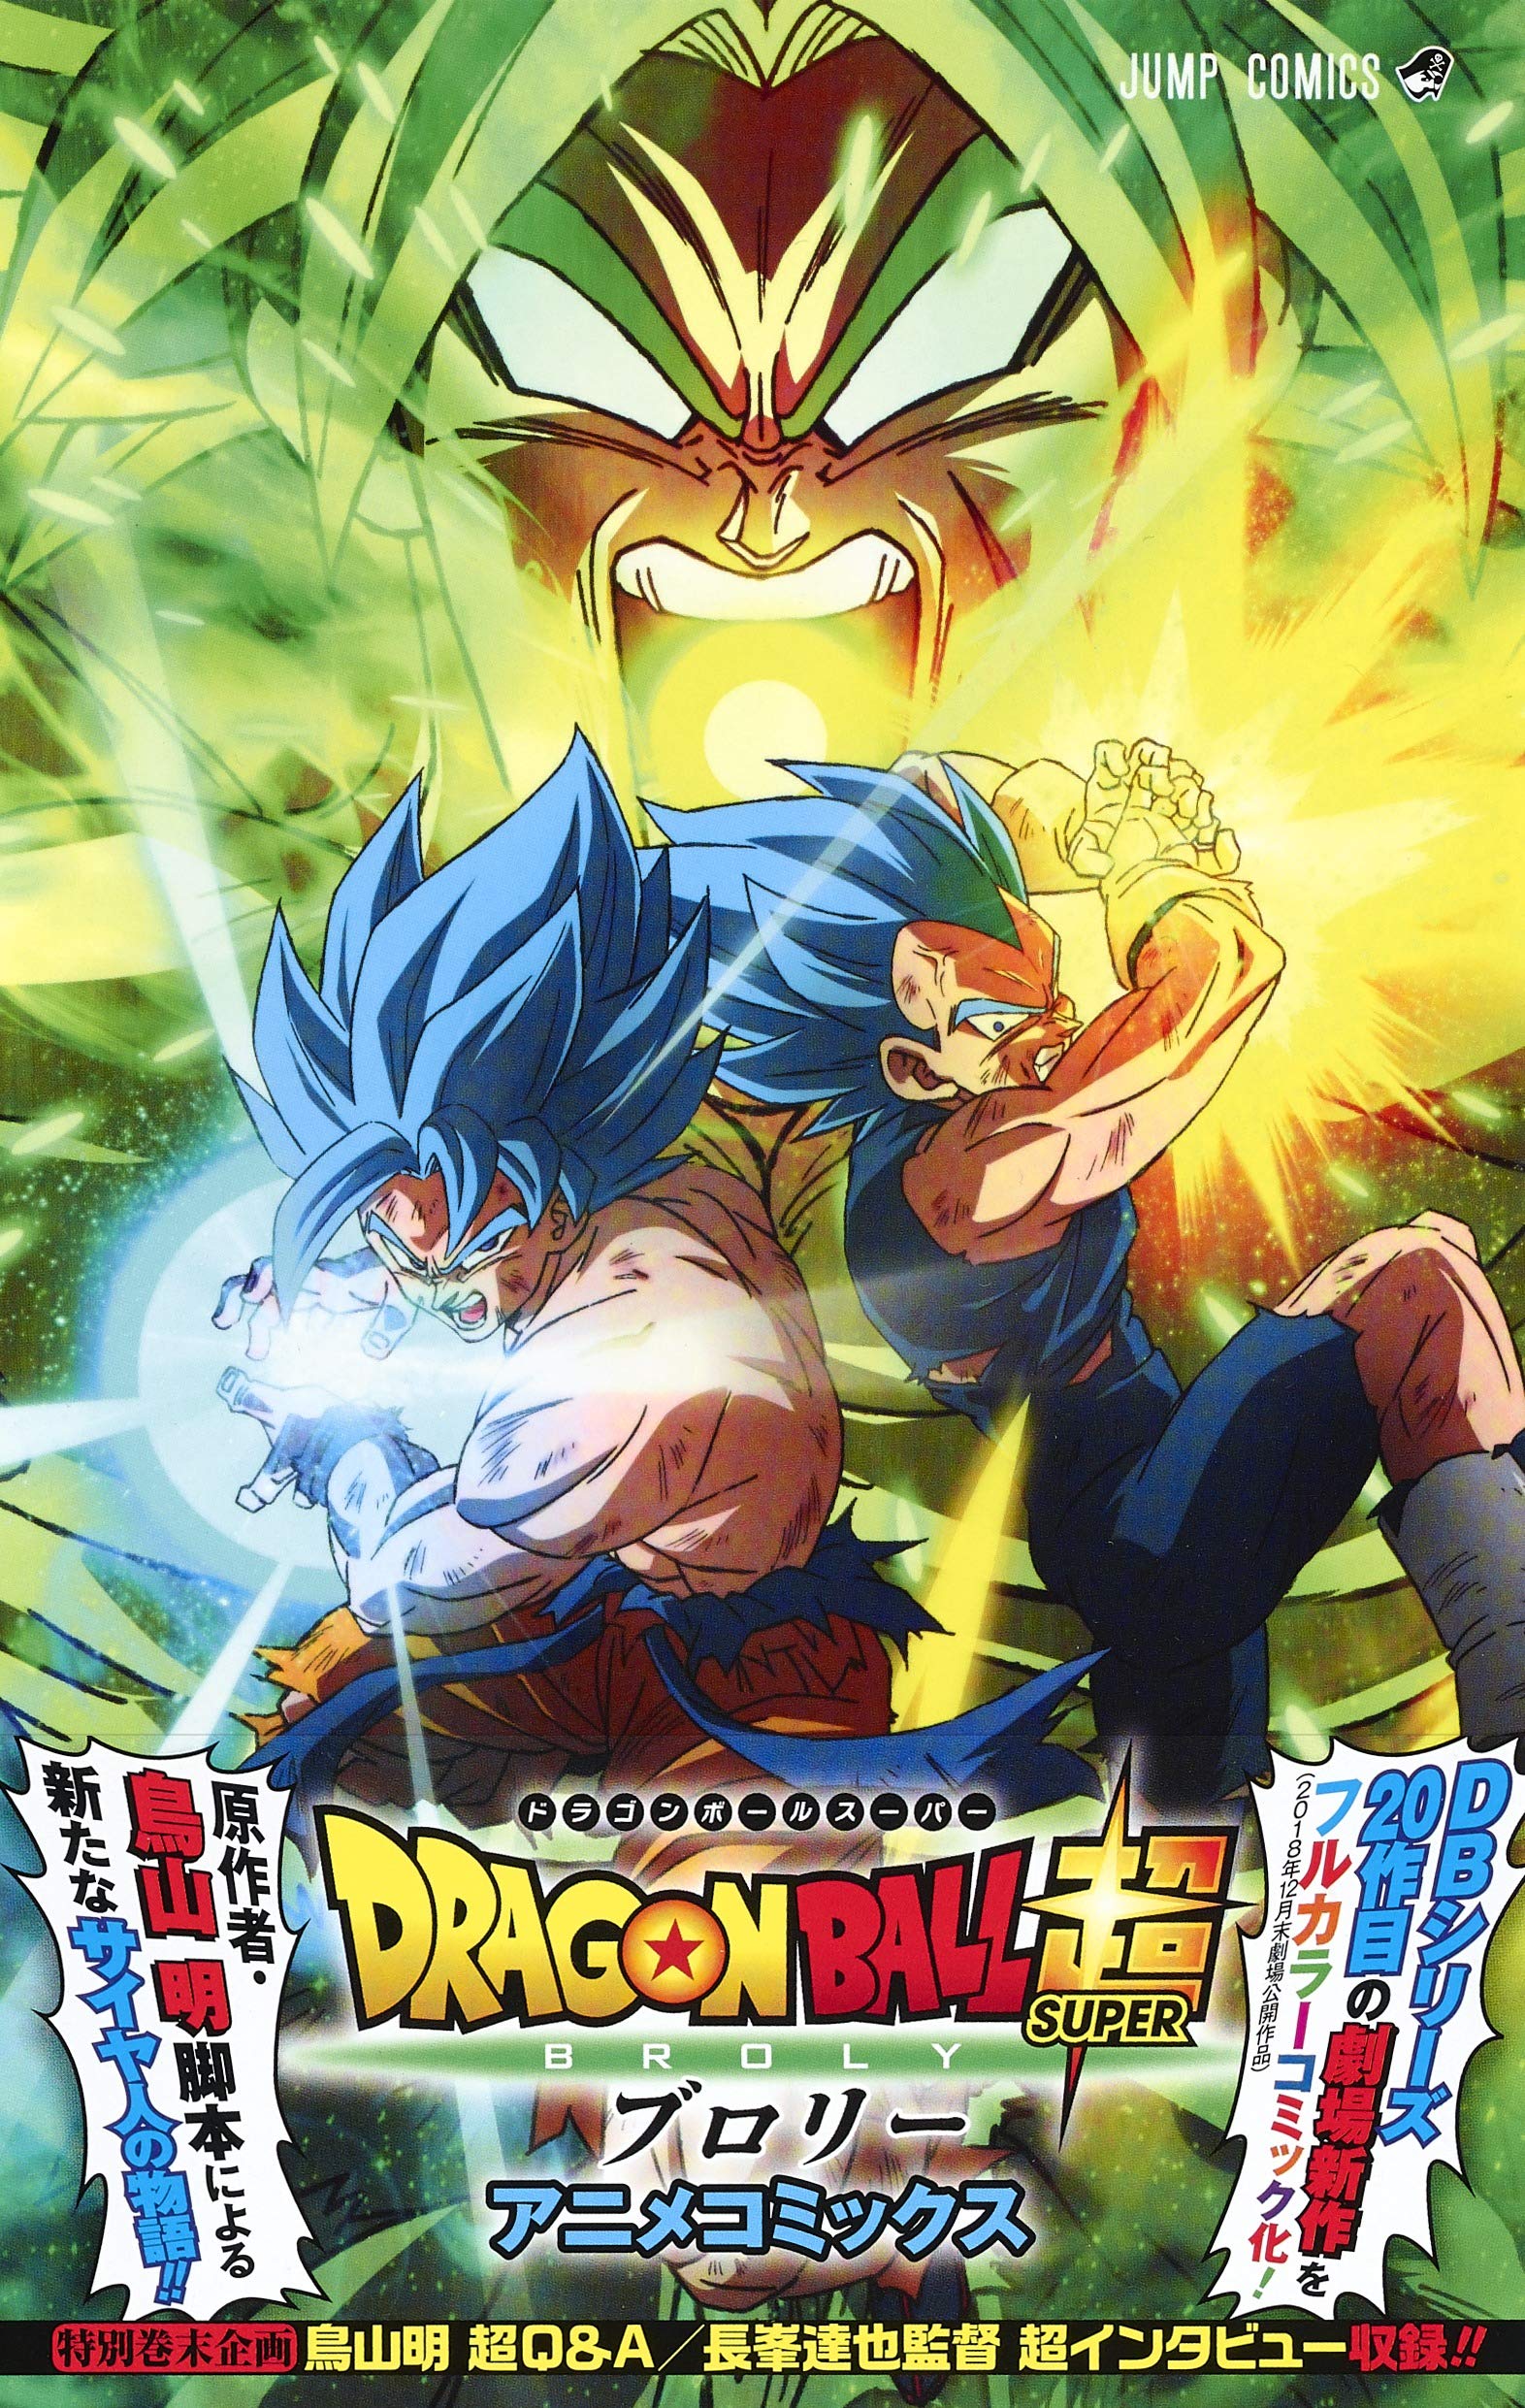 DRAGON BALL SUPER Broly anime comics